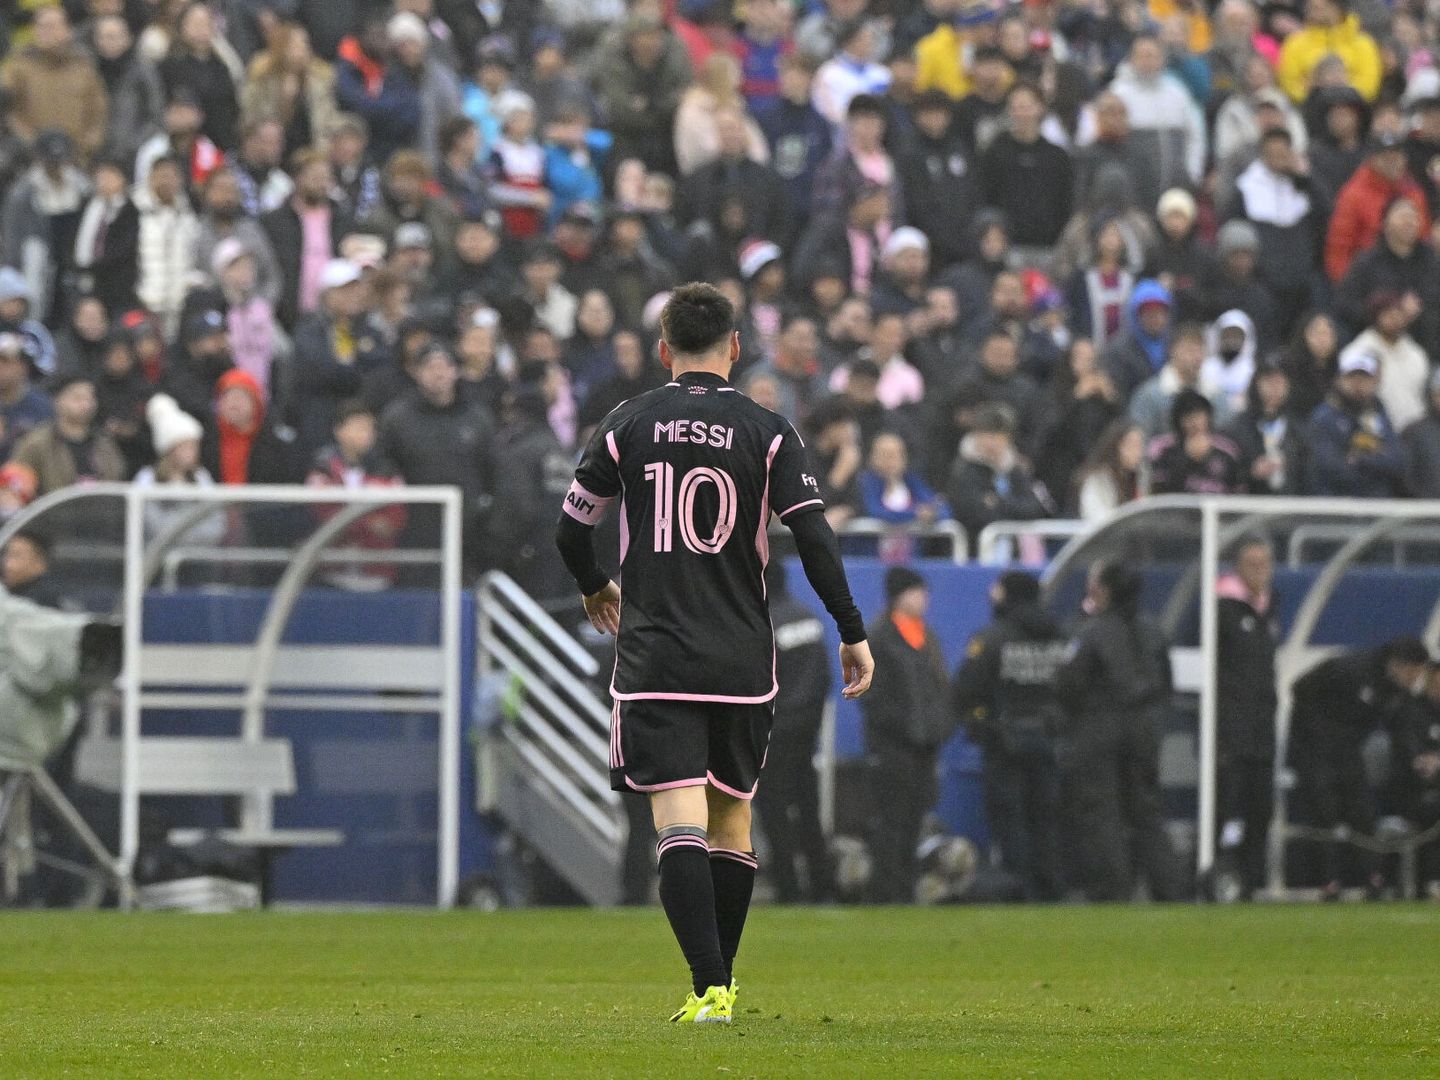 La llegada de Messi ha contribuido a elevar el interés por la MLS. (Reuters/Jerome Miron)